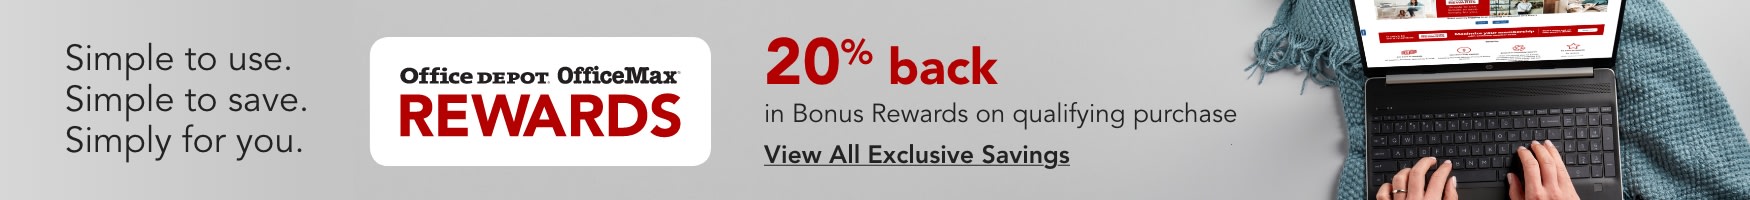 20% back in bonus rewards